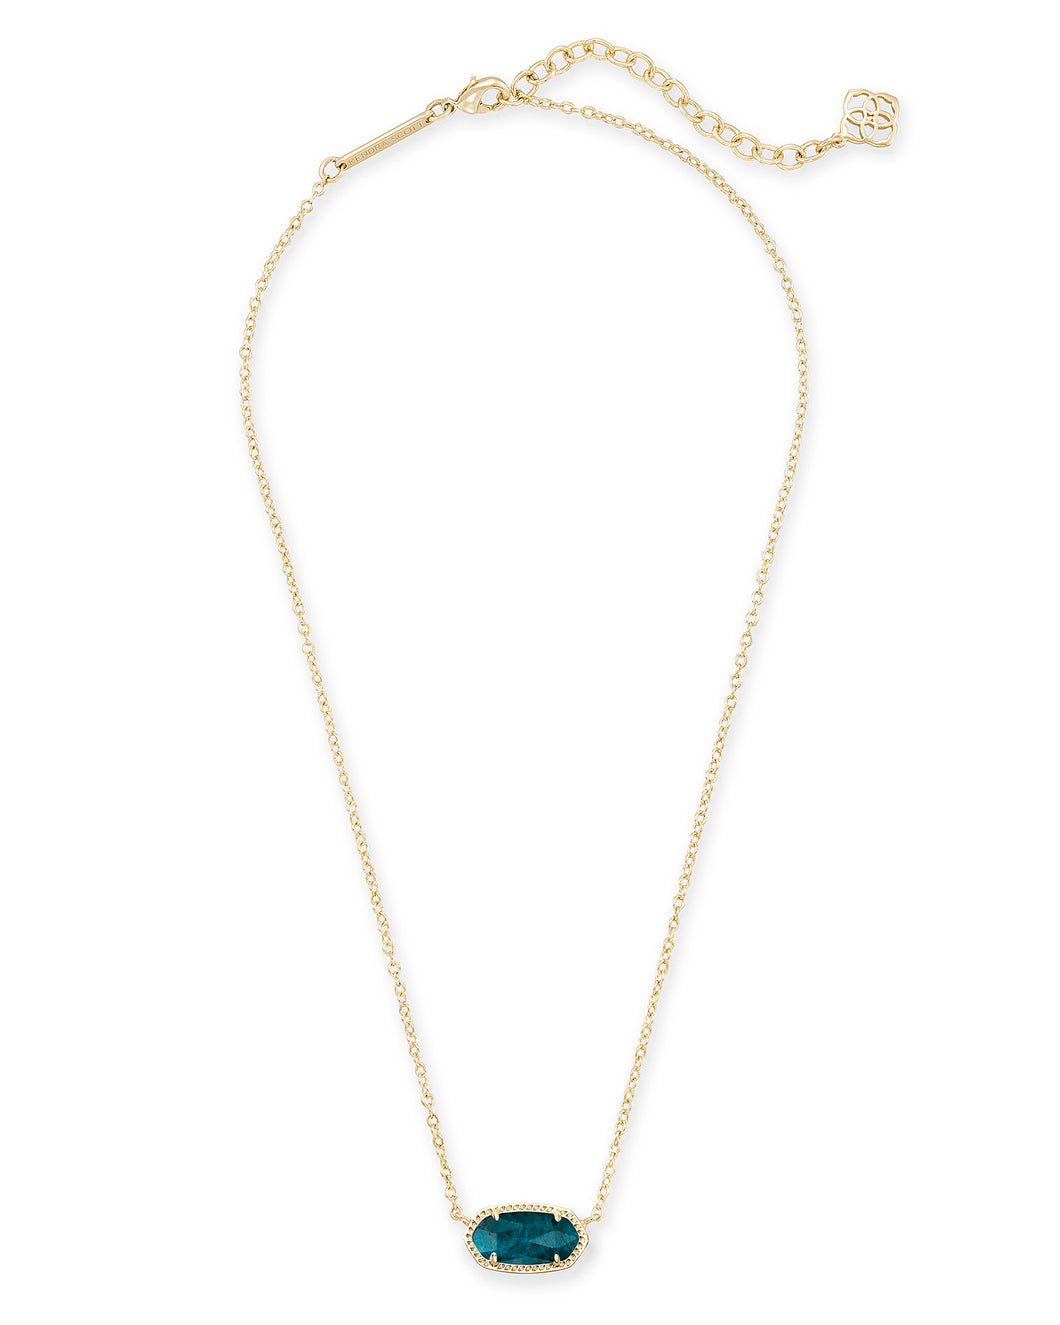 Elisa Gold Pendant Necklace in Aqua Apatite